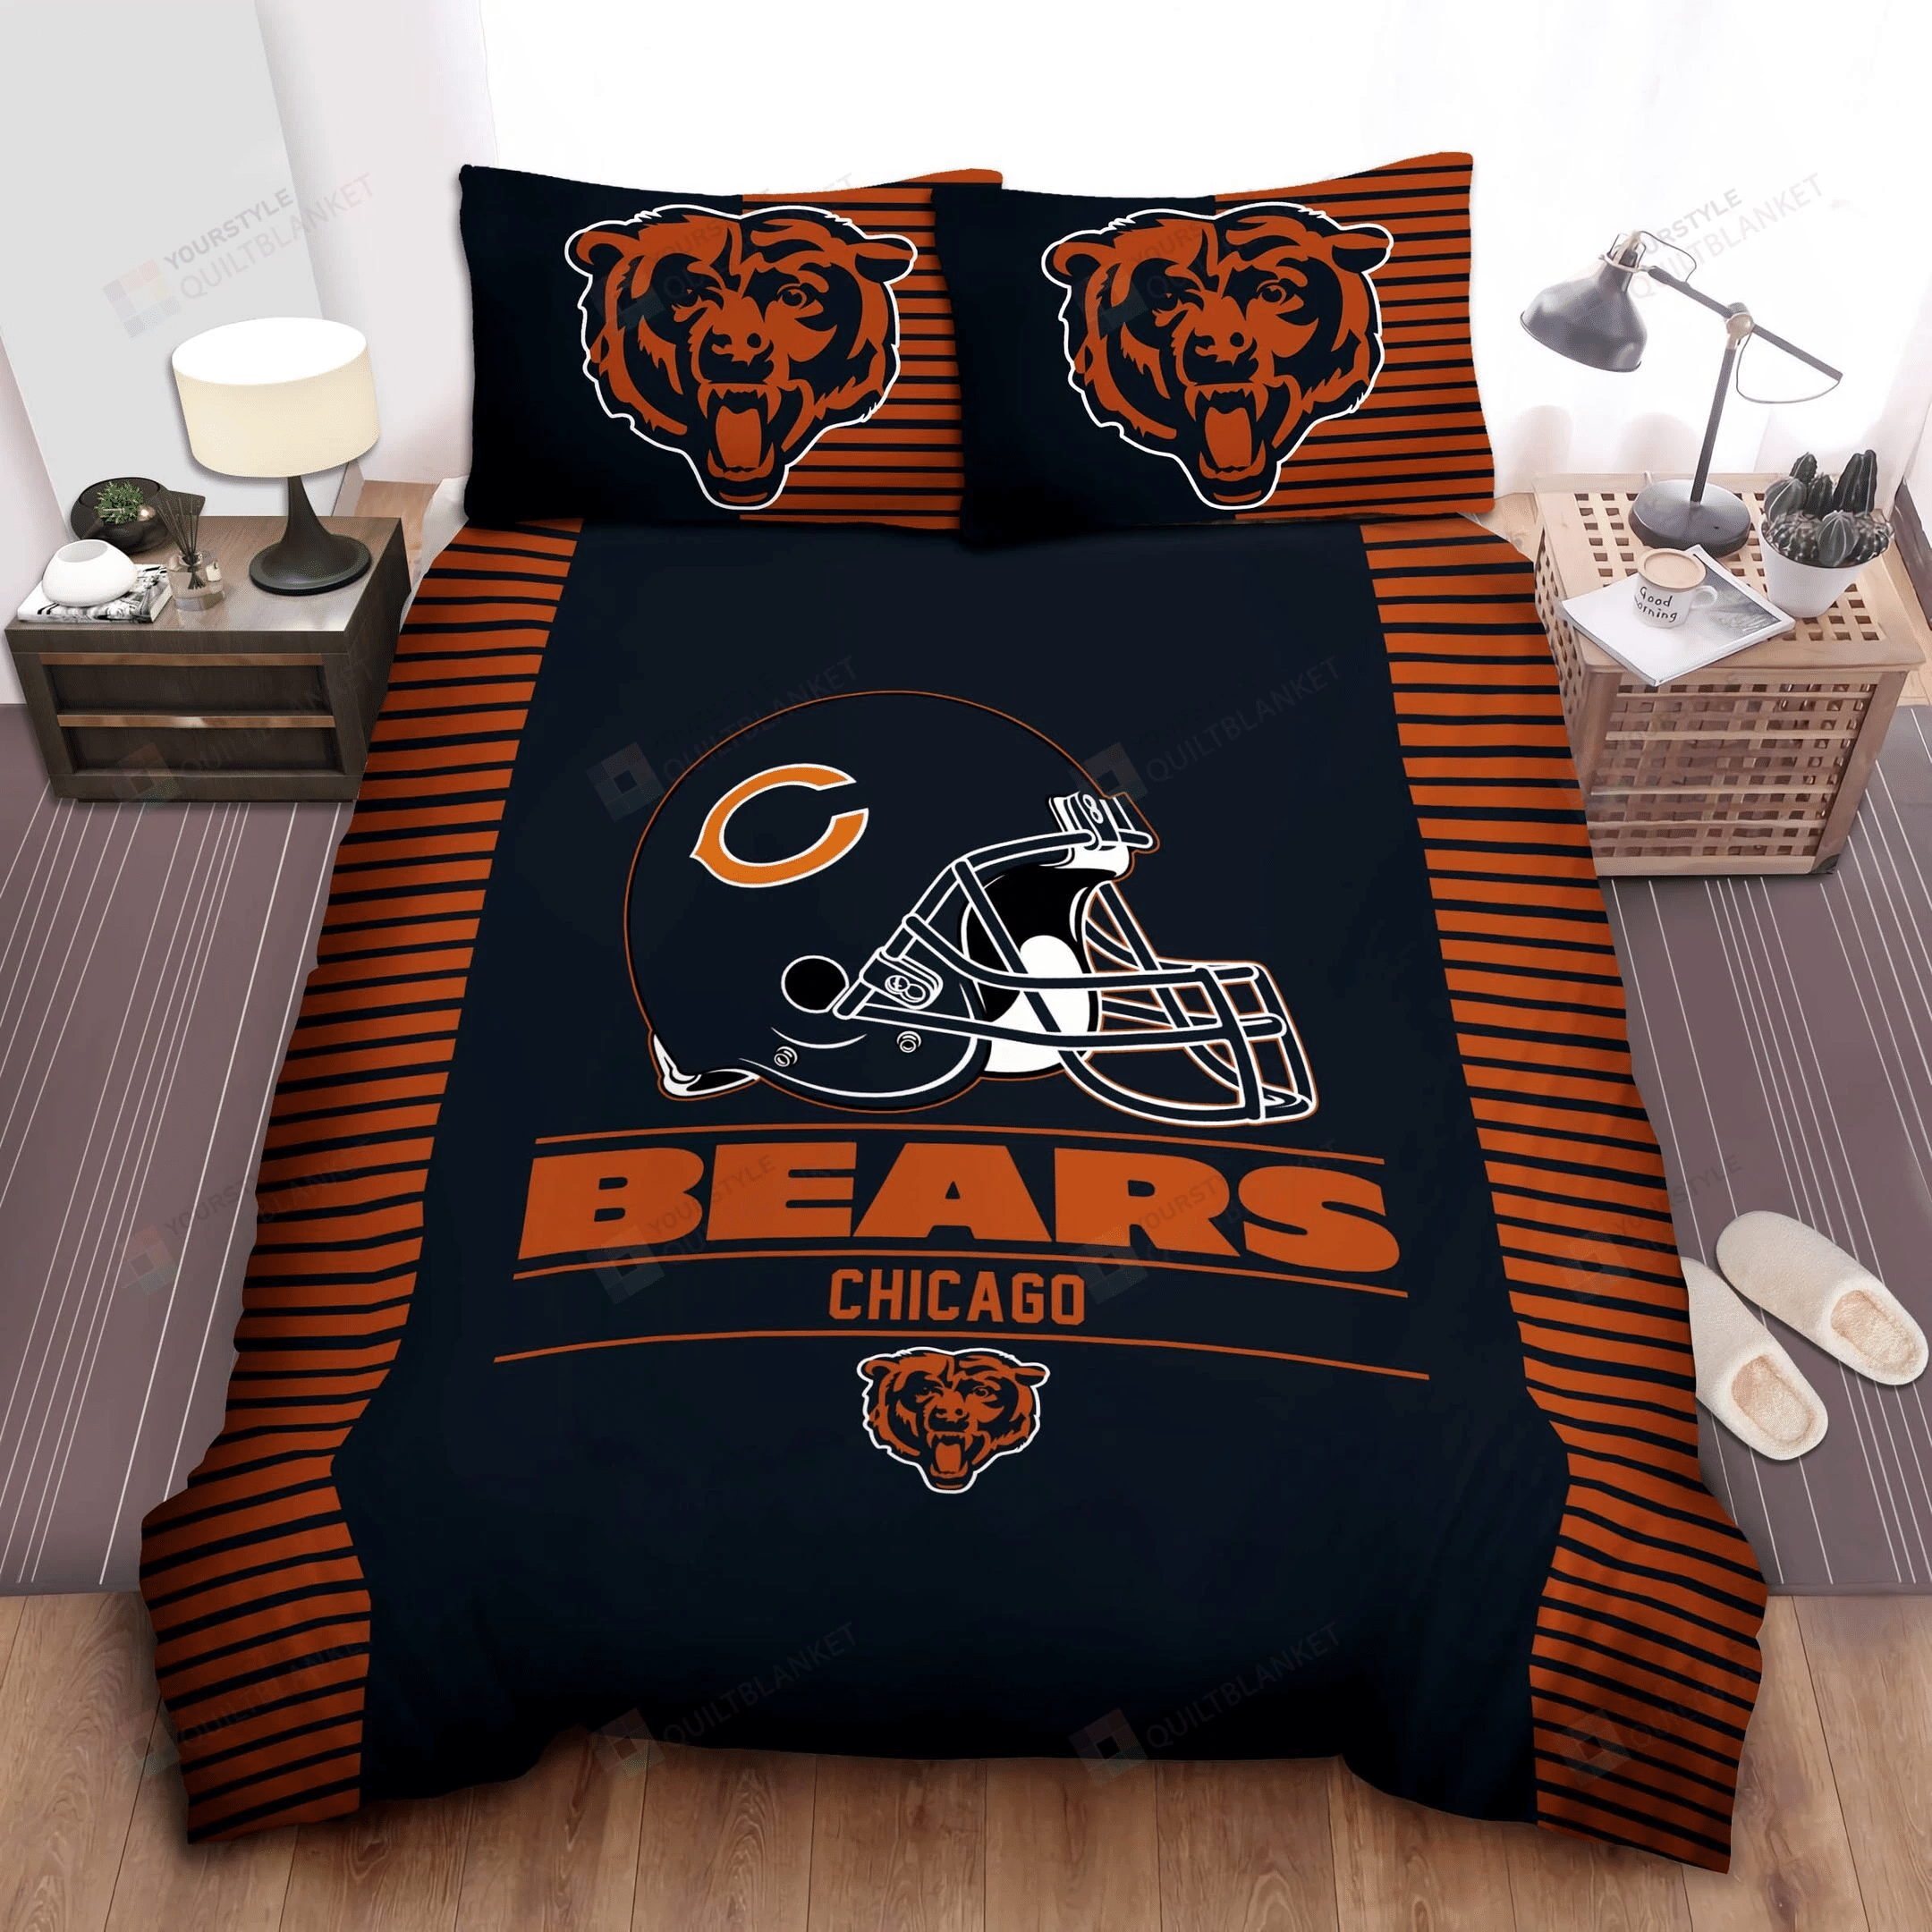 Chicago Bears Bedding Set Duvet Cover Pillow Cases